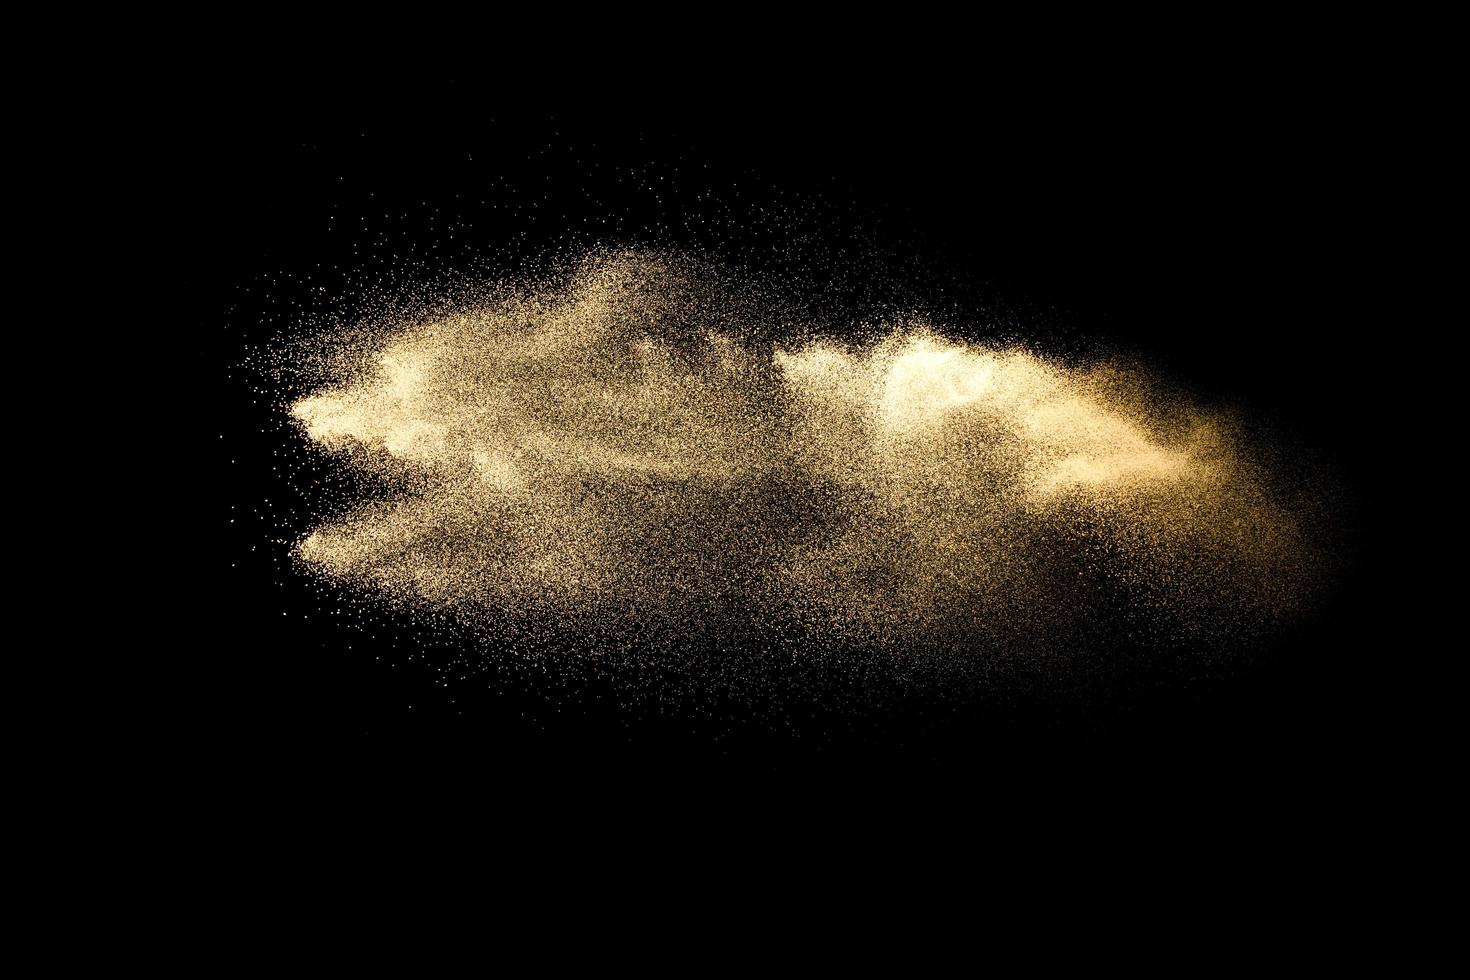 nube de arena abstracta.salpicadura de arena de color dorado sobre fondo oscuro.ola de mosca de arena amarilla en el aire. explosión de arena sobre fondo negro, lanzando el concepto de movimiento de parada de congelación. foto